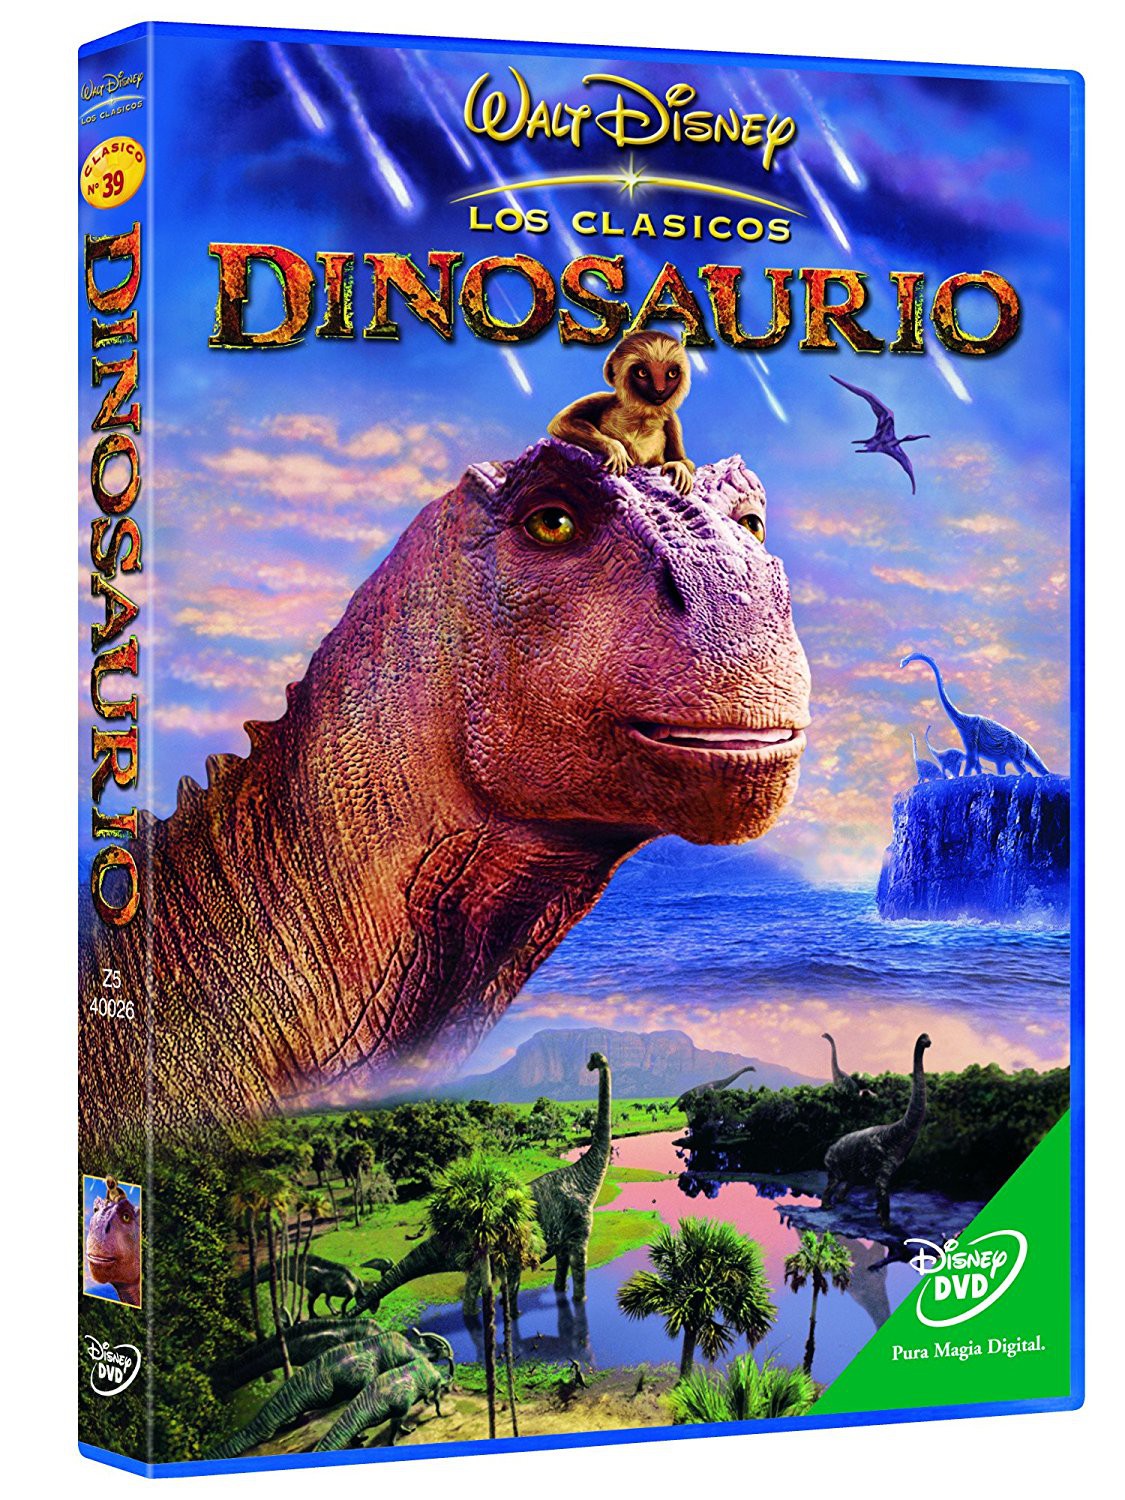 Repetirse R pagar Dinosaurio Disney DVD